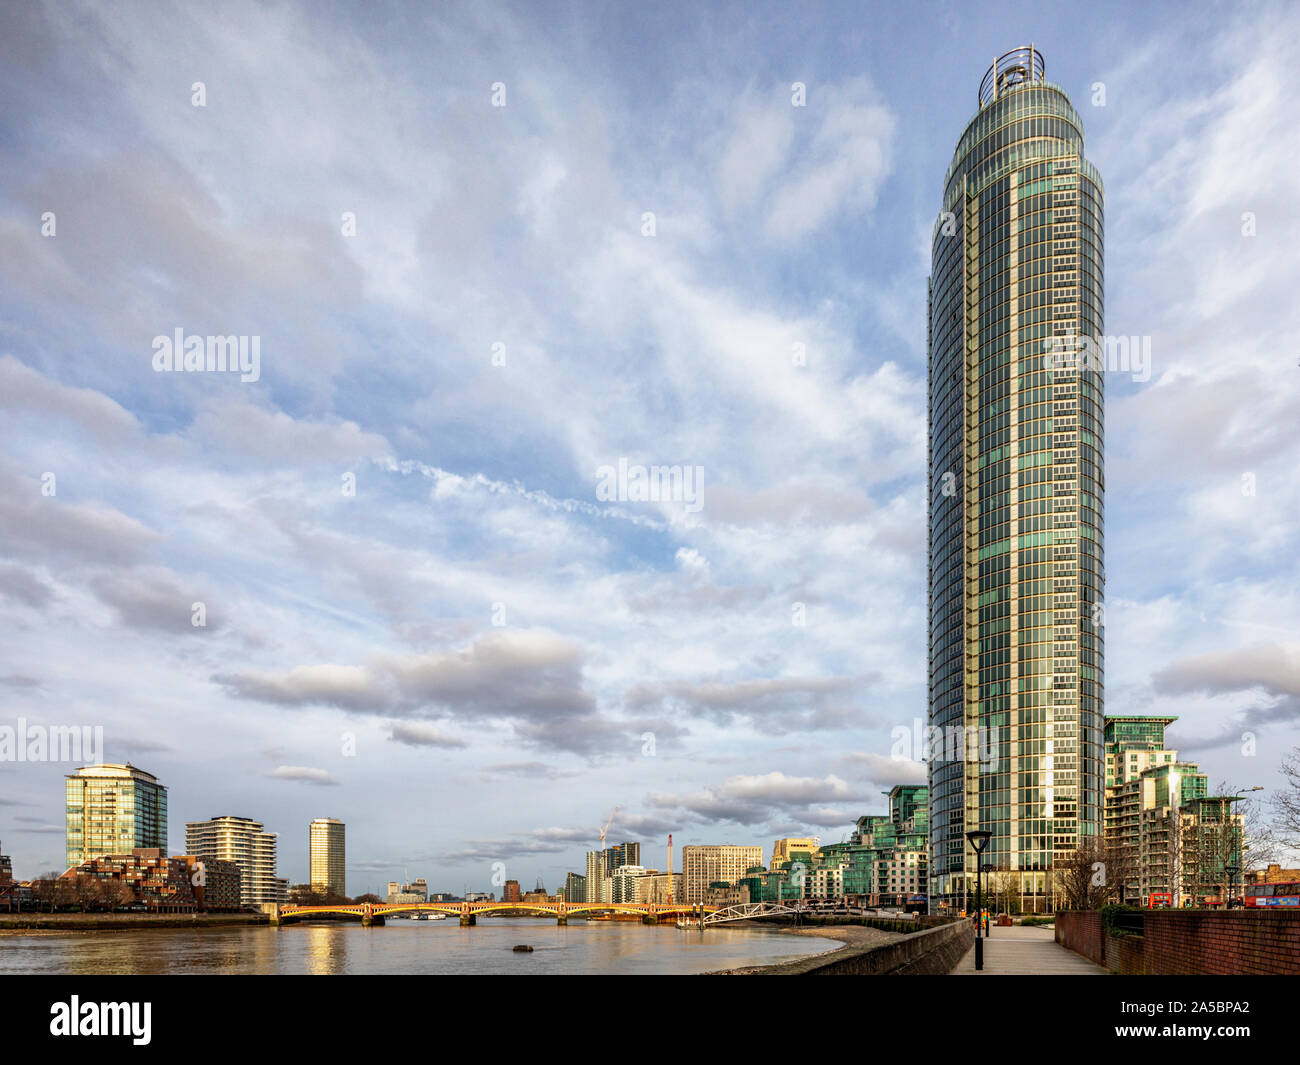 St George Wharf Tower, auch als Vauxhall Turm genannt, ist ein Wohnwolkenkratzer, Vauxhall, London, und Teil der St George Wharf, Entwicklung. Stockfoto